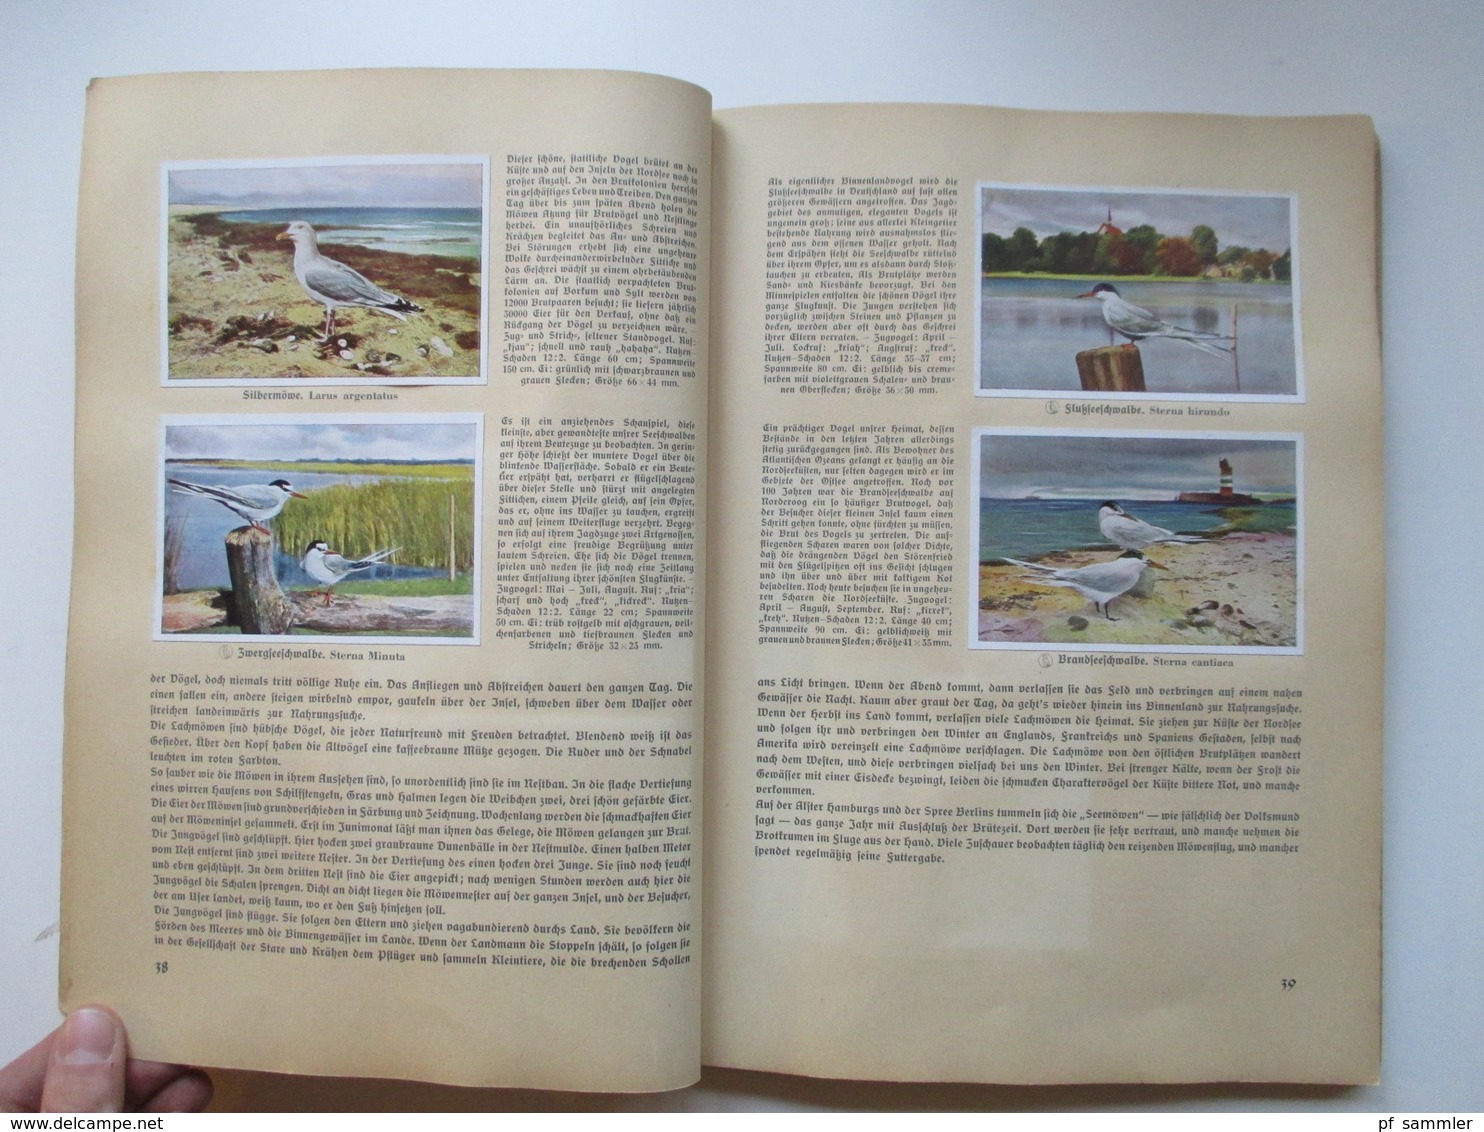 Sammelbilder komplettes Album aus Deutschlands Vogelwelt von 1936 Zigarettenbilder